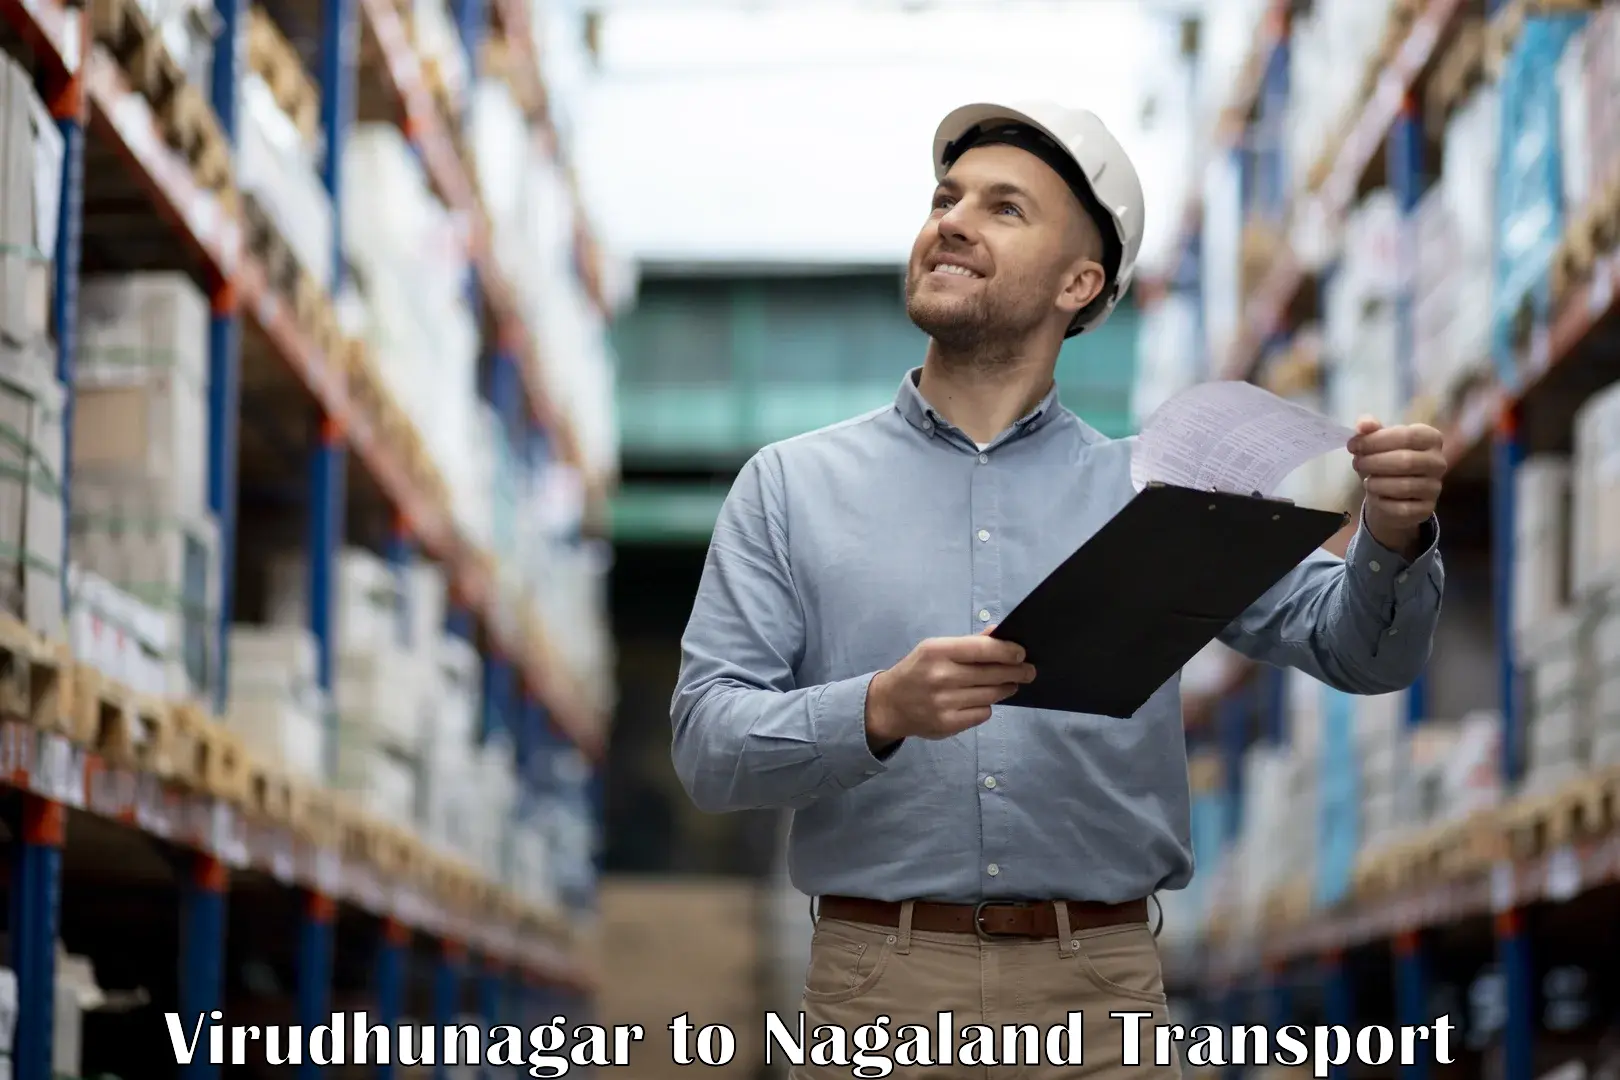 Furniture transport service in Virudhunagar to Chumukedima